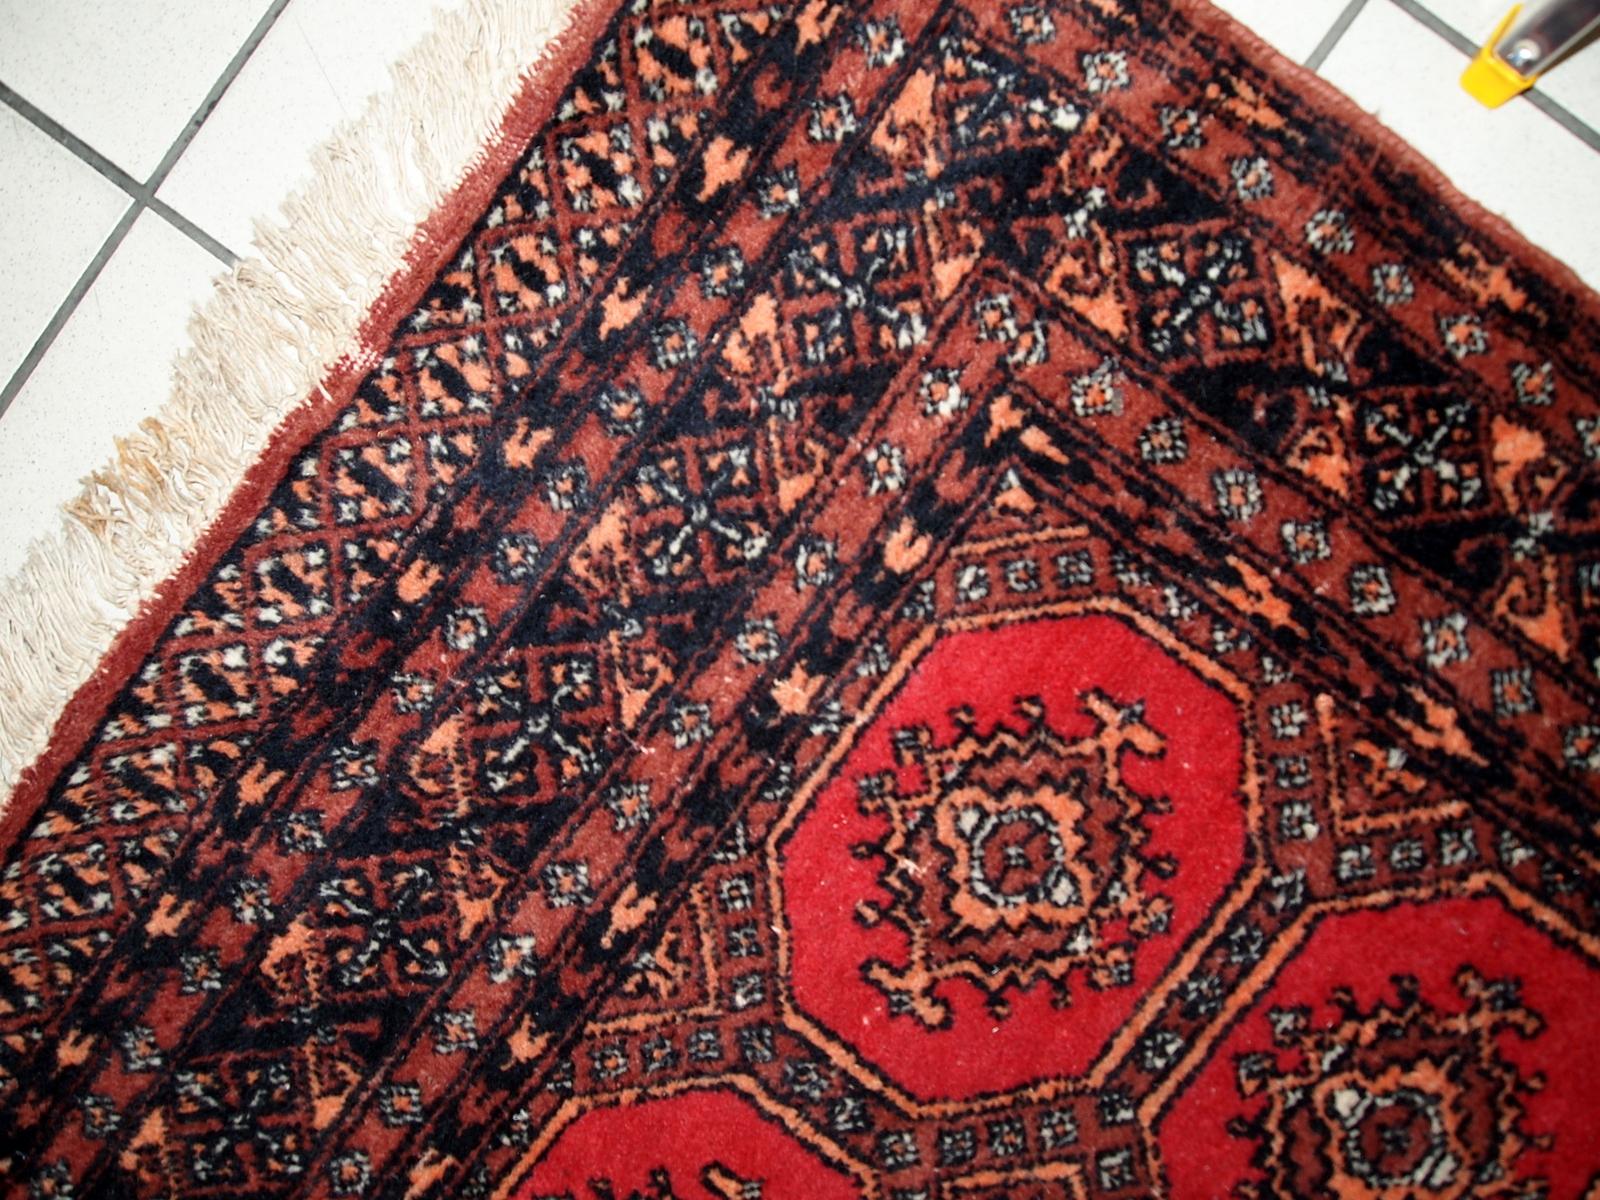 Tapis ouzbek de Boukhara vintage fait main en bon état d'origine. Le tapis a été réalisé en laine douce au milieu du 20e siècle. 

-condition : original bon,

-Circa : 1960,

-Taille : 3,9' x 5,8' (121cm x 177cm),

-Matériau : laine,

-Pays